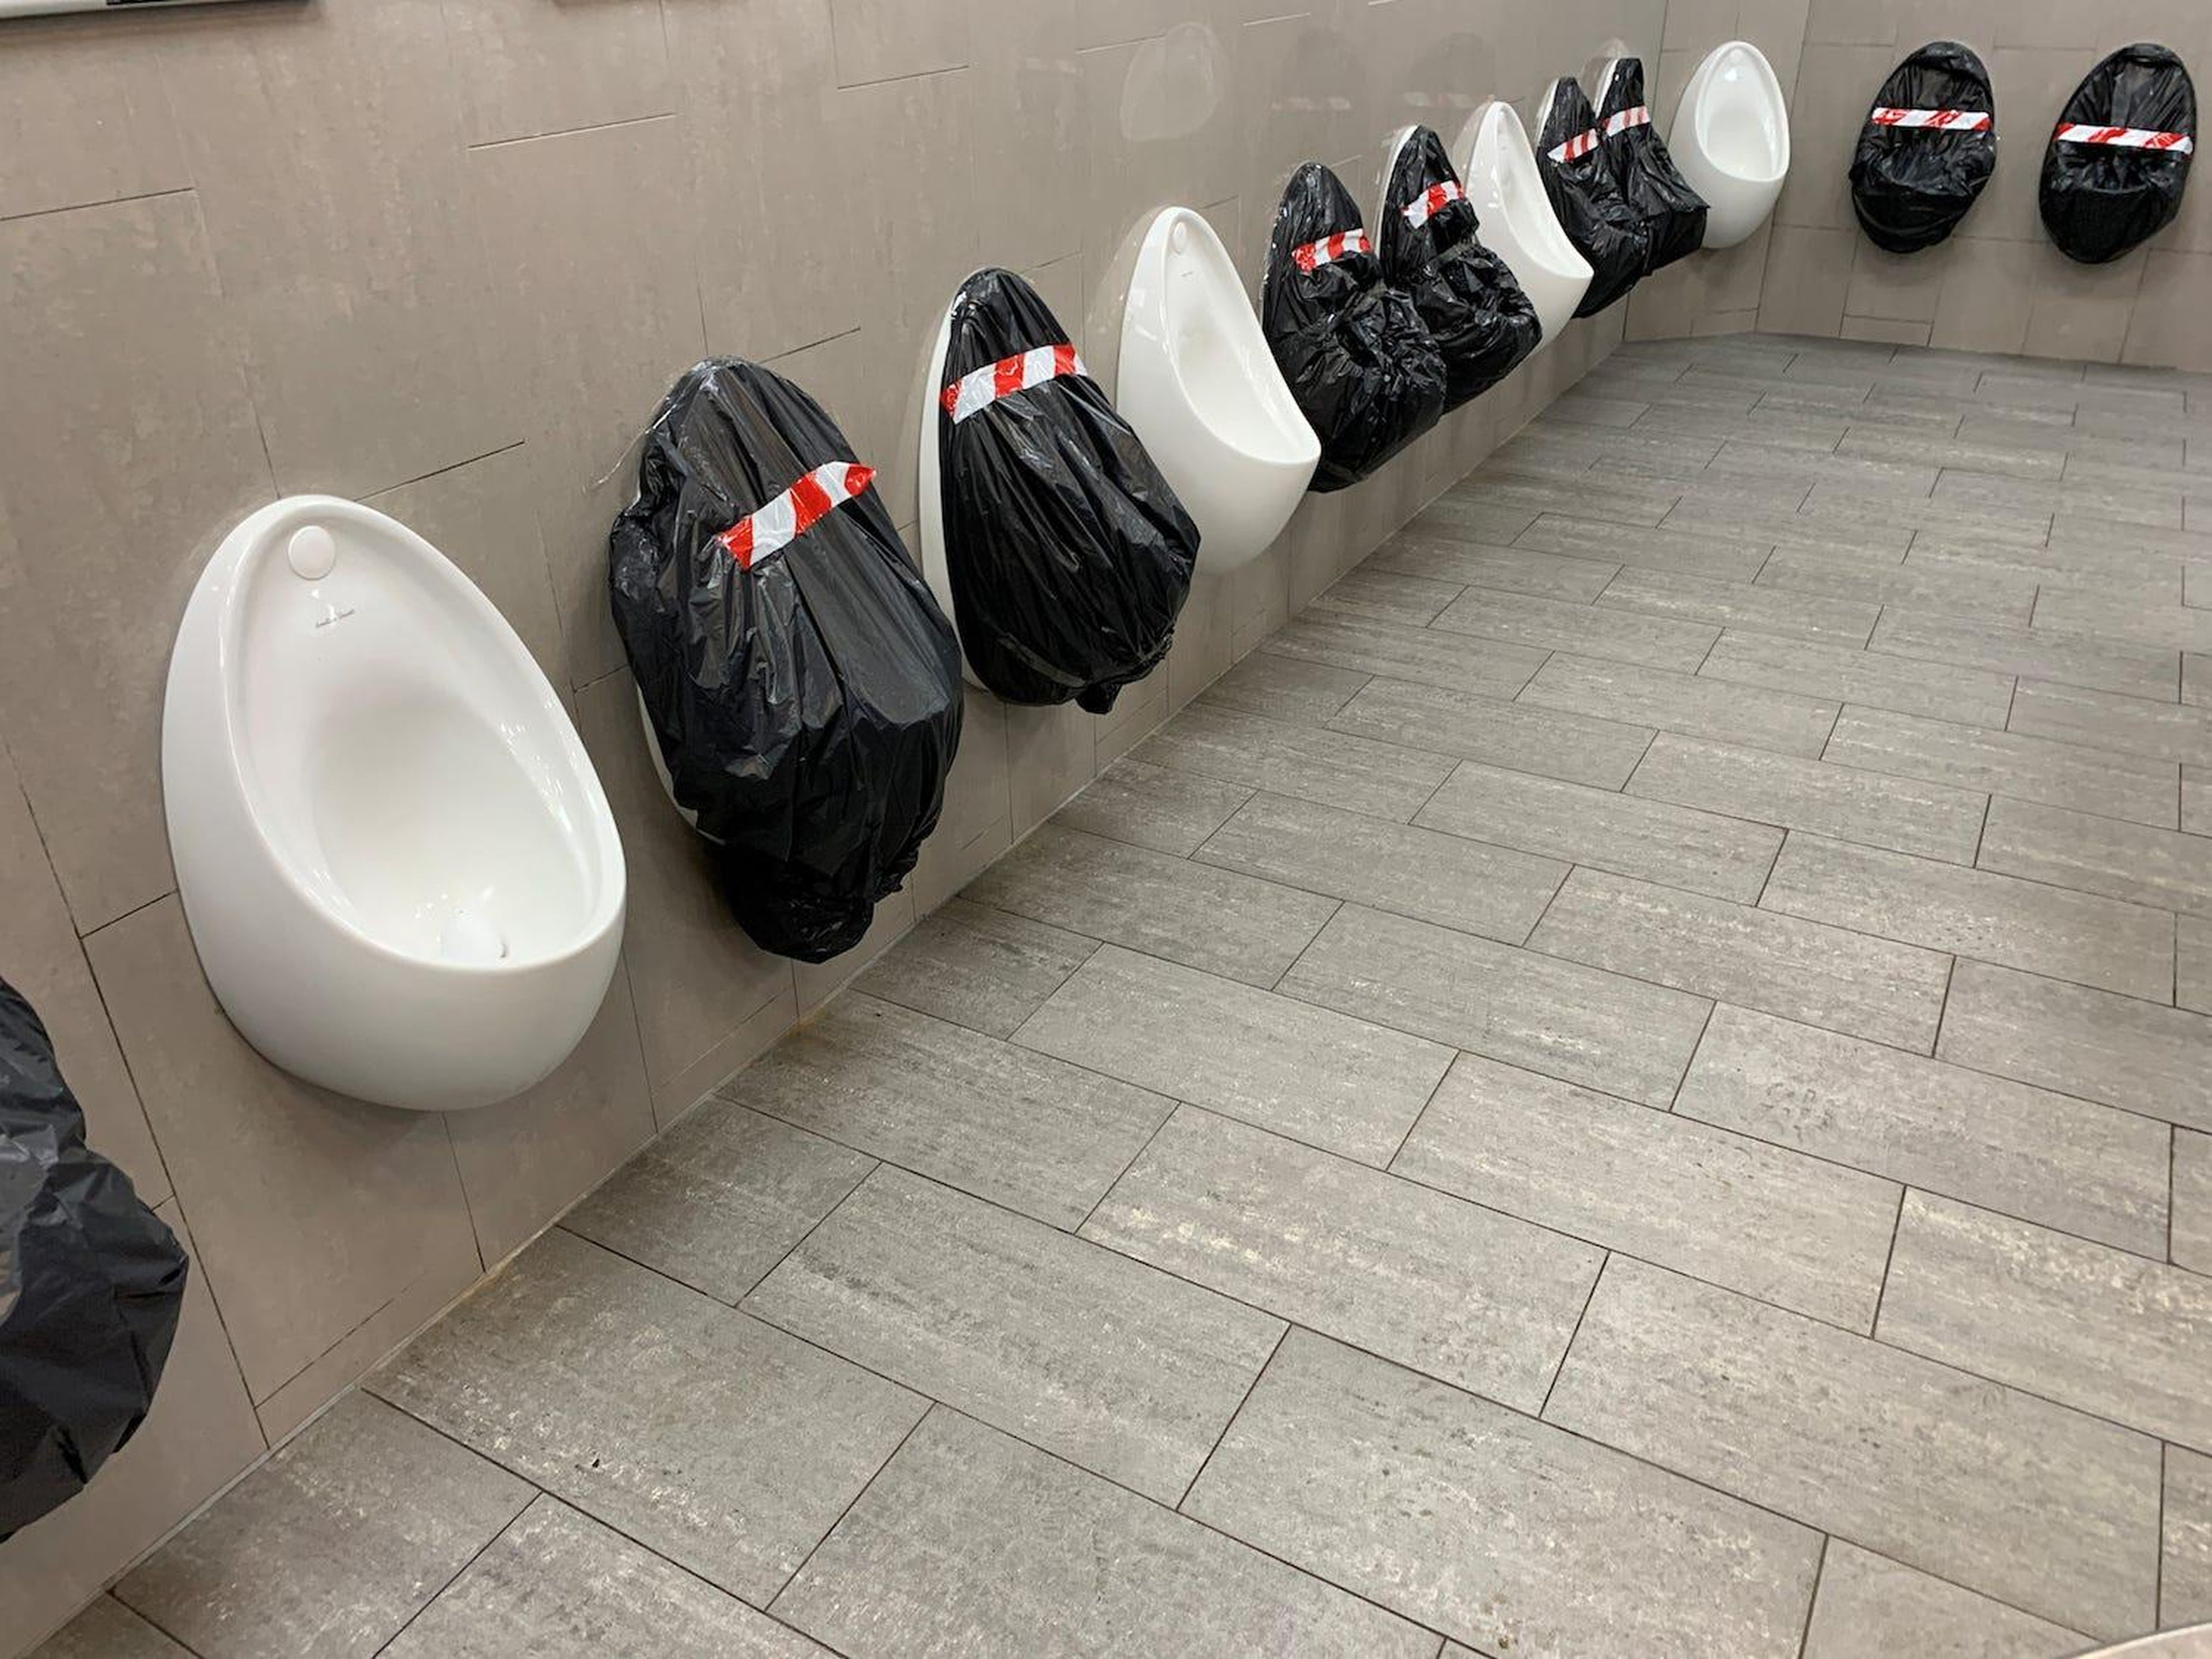 Urinarios preparados para mantener el distanciamiento social en la autopista M20 en Maidstone, Gran Bretaña, el 26 de marzo de 2020.